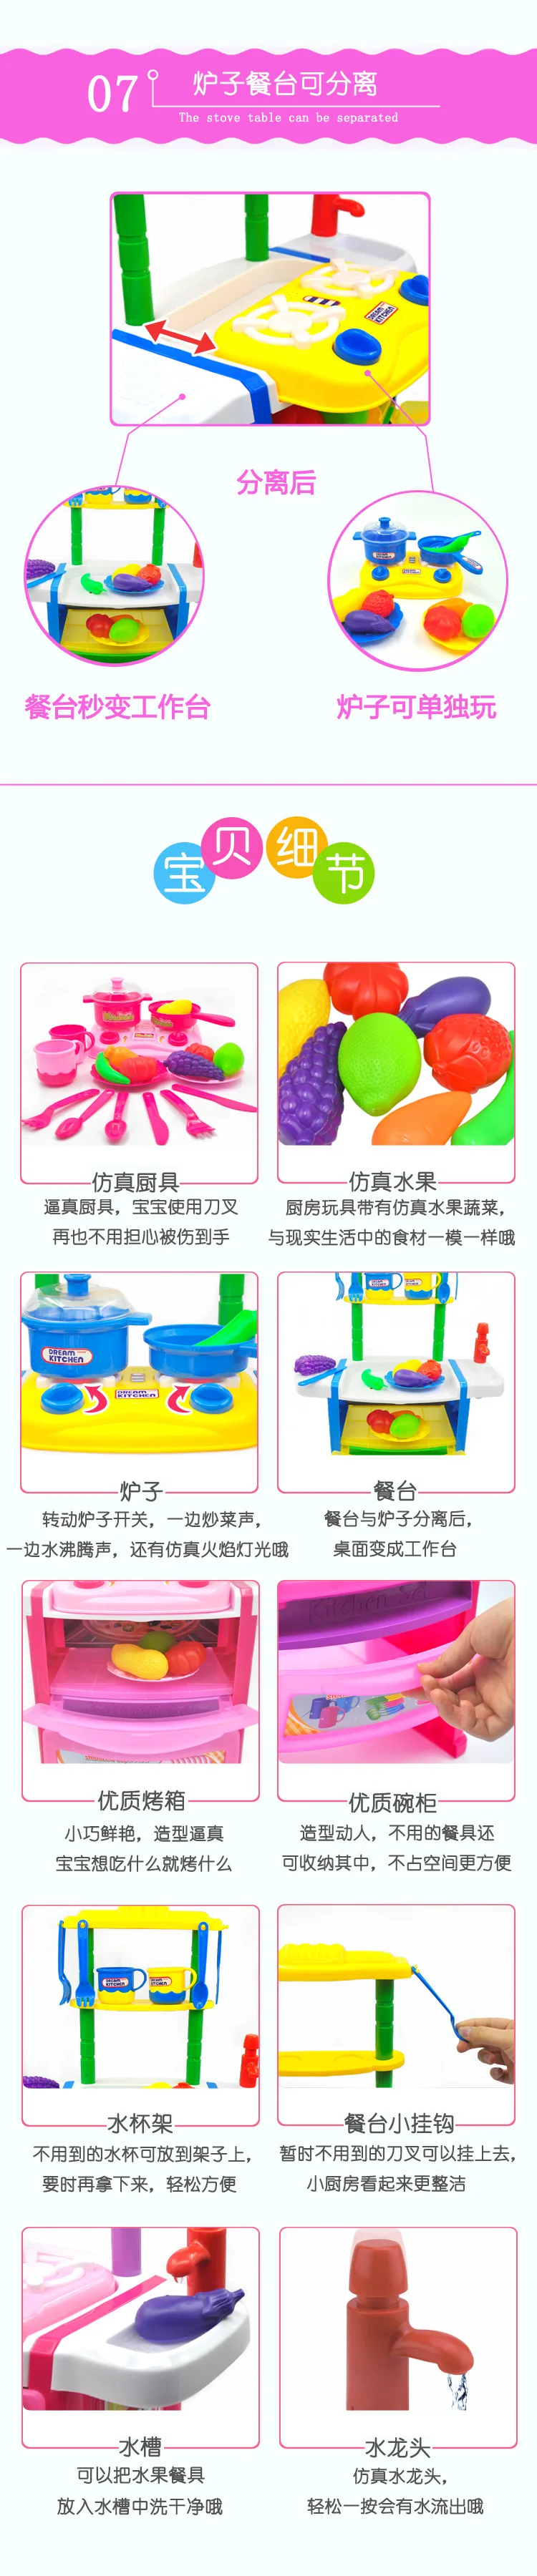 Двор Пластик образования Игрушечные лошадки Кухонные игрушки для детей Кухня игрушки развивающие Игрушечные лошадки